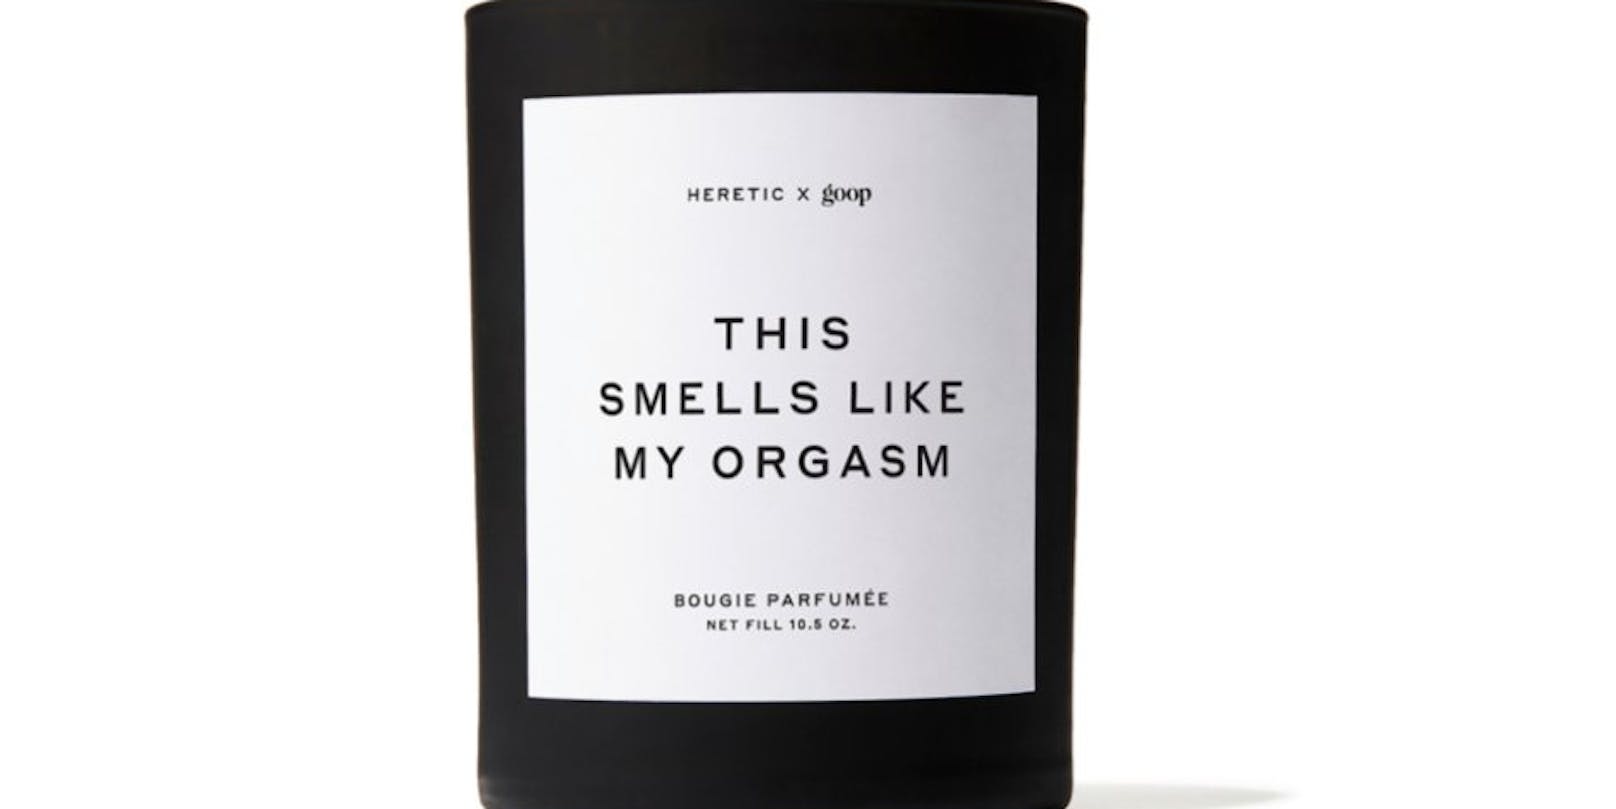 Gwyneth Paltrow neuester Coup: Eine Kerze, die nach ihrem Orgasmus riechen soll.